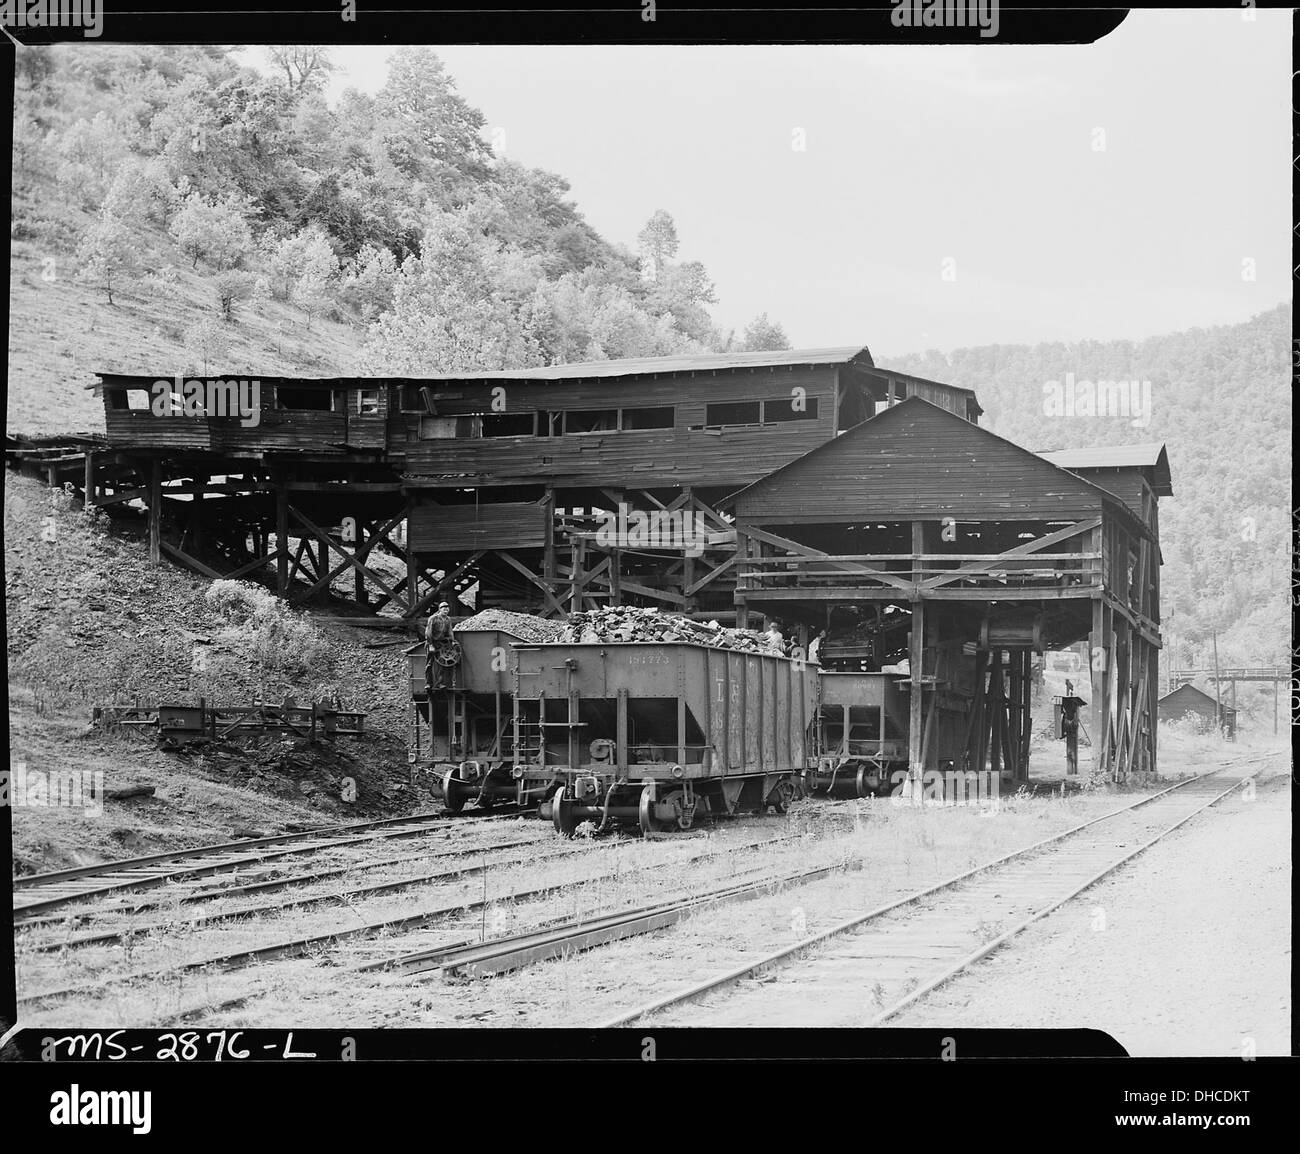 The tipple. P V & K Coal Company, Clover Gap Mine, Lejunior, Harlan County, Kentucky. 541398 Stock Photo